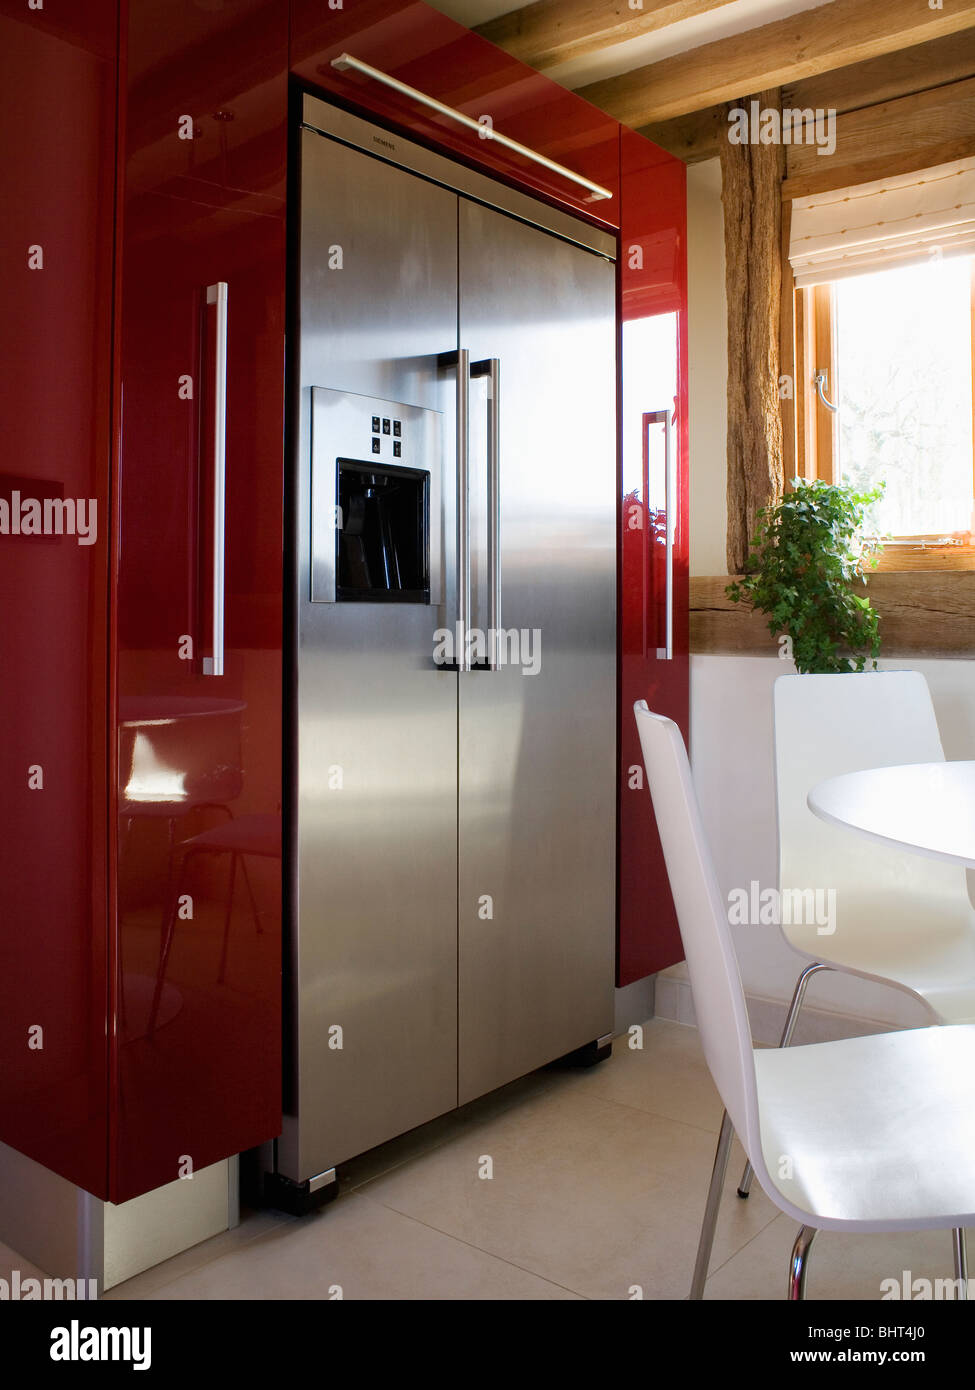 Große Edelstahl-amerikanische Kühl-Gefrierkombination in moderne Küche  Esszimmer mit weißen Tisch und Stühlen Stockfotografie - Alamy